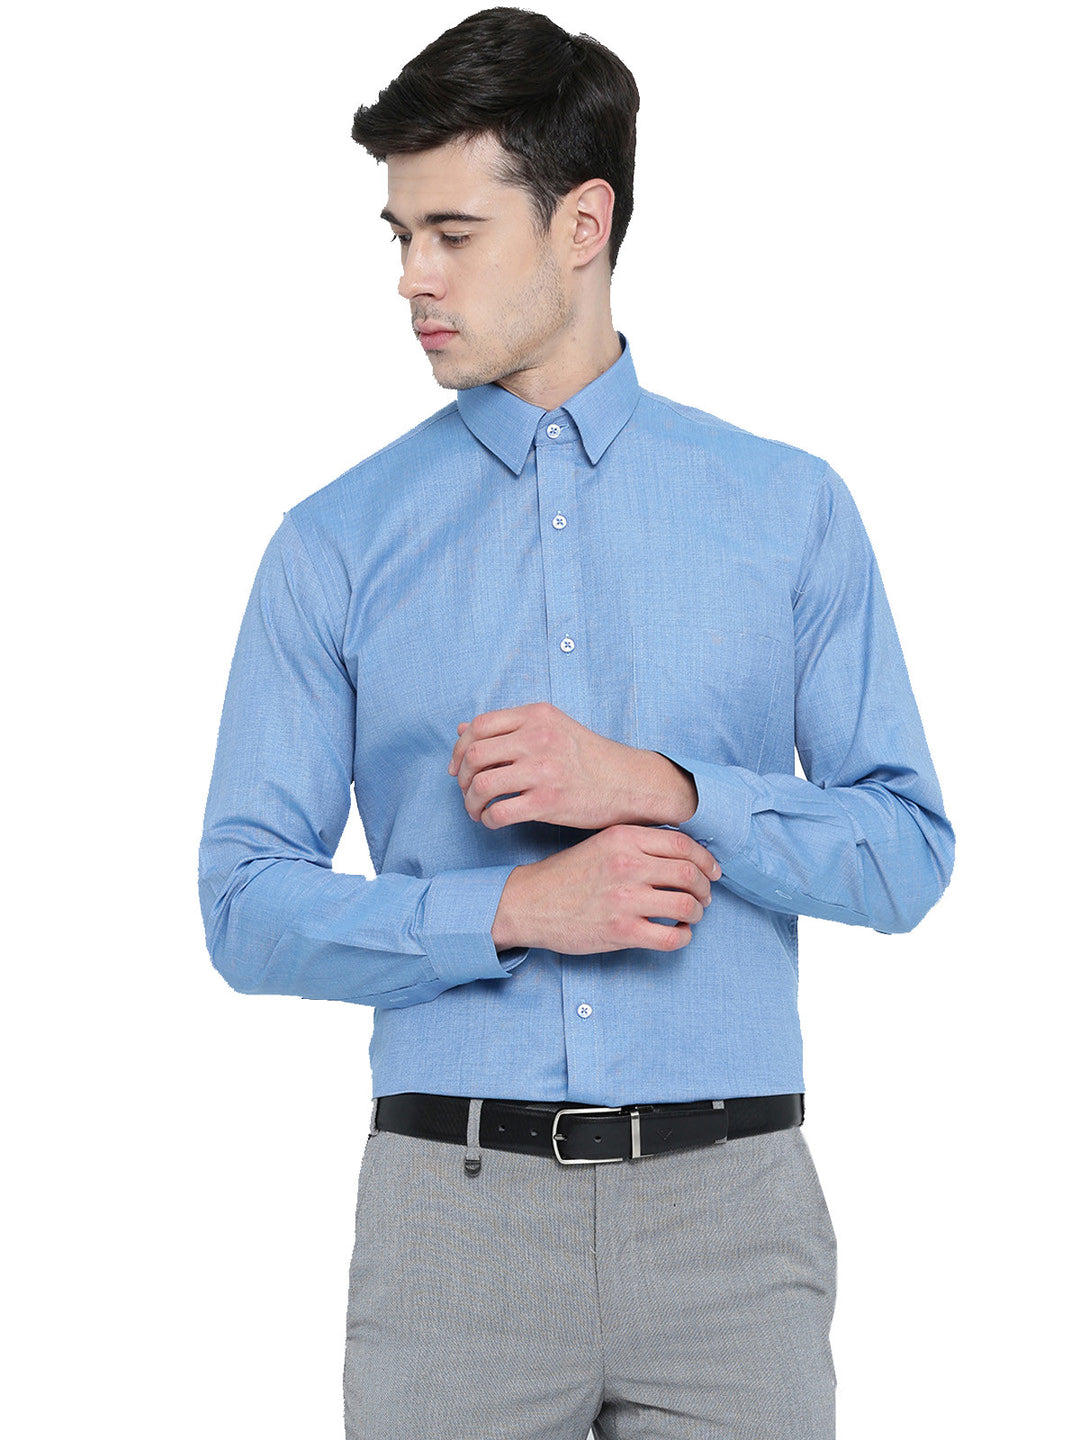 Men TBlue Solids Cotton Rich Slim Fit Formal Shirt